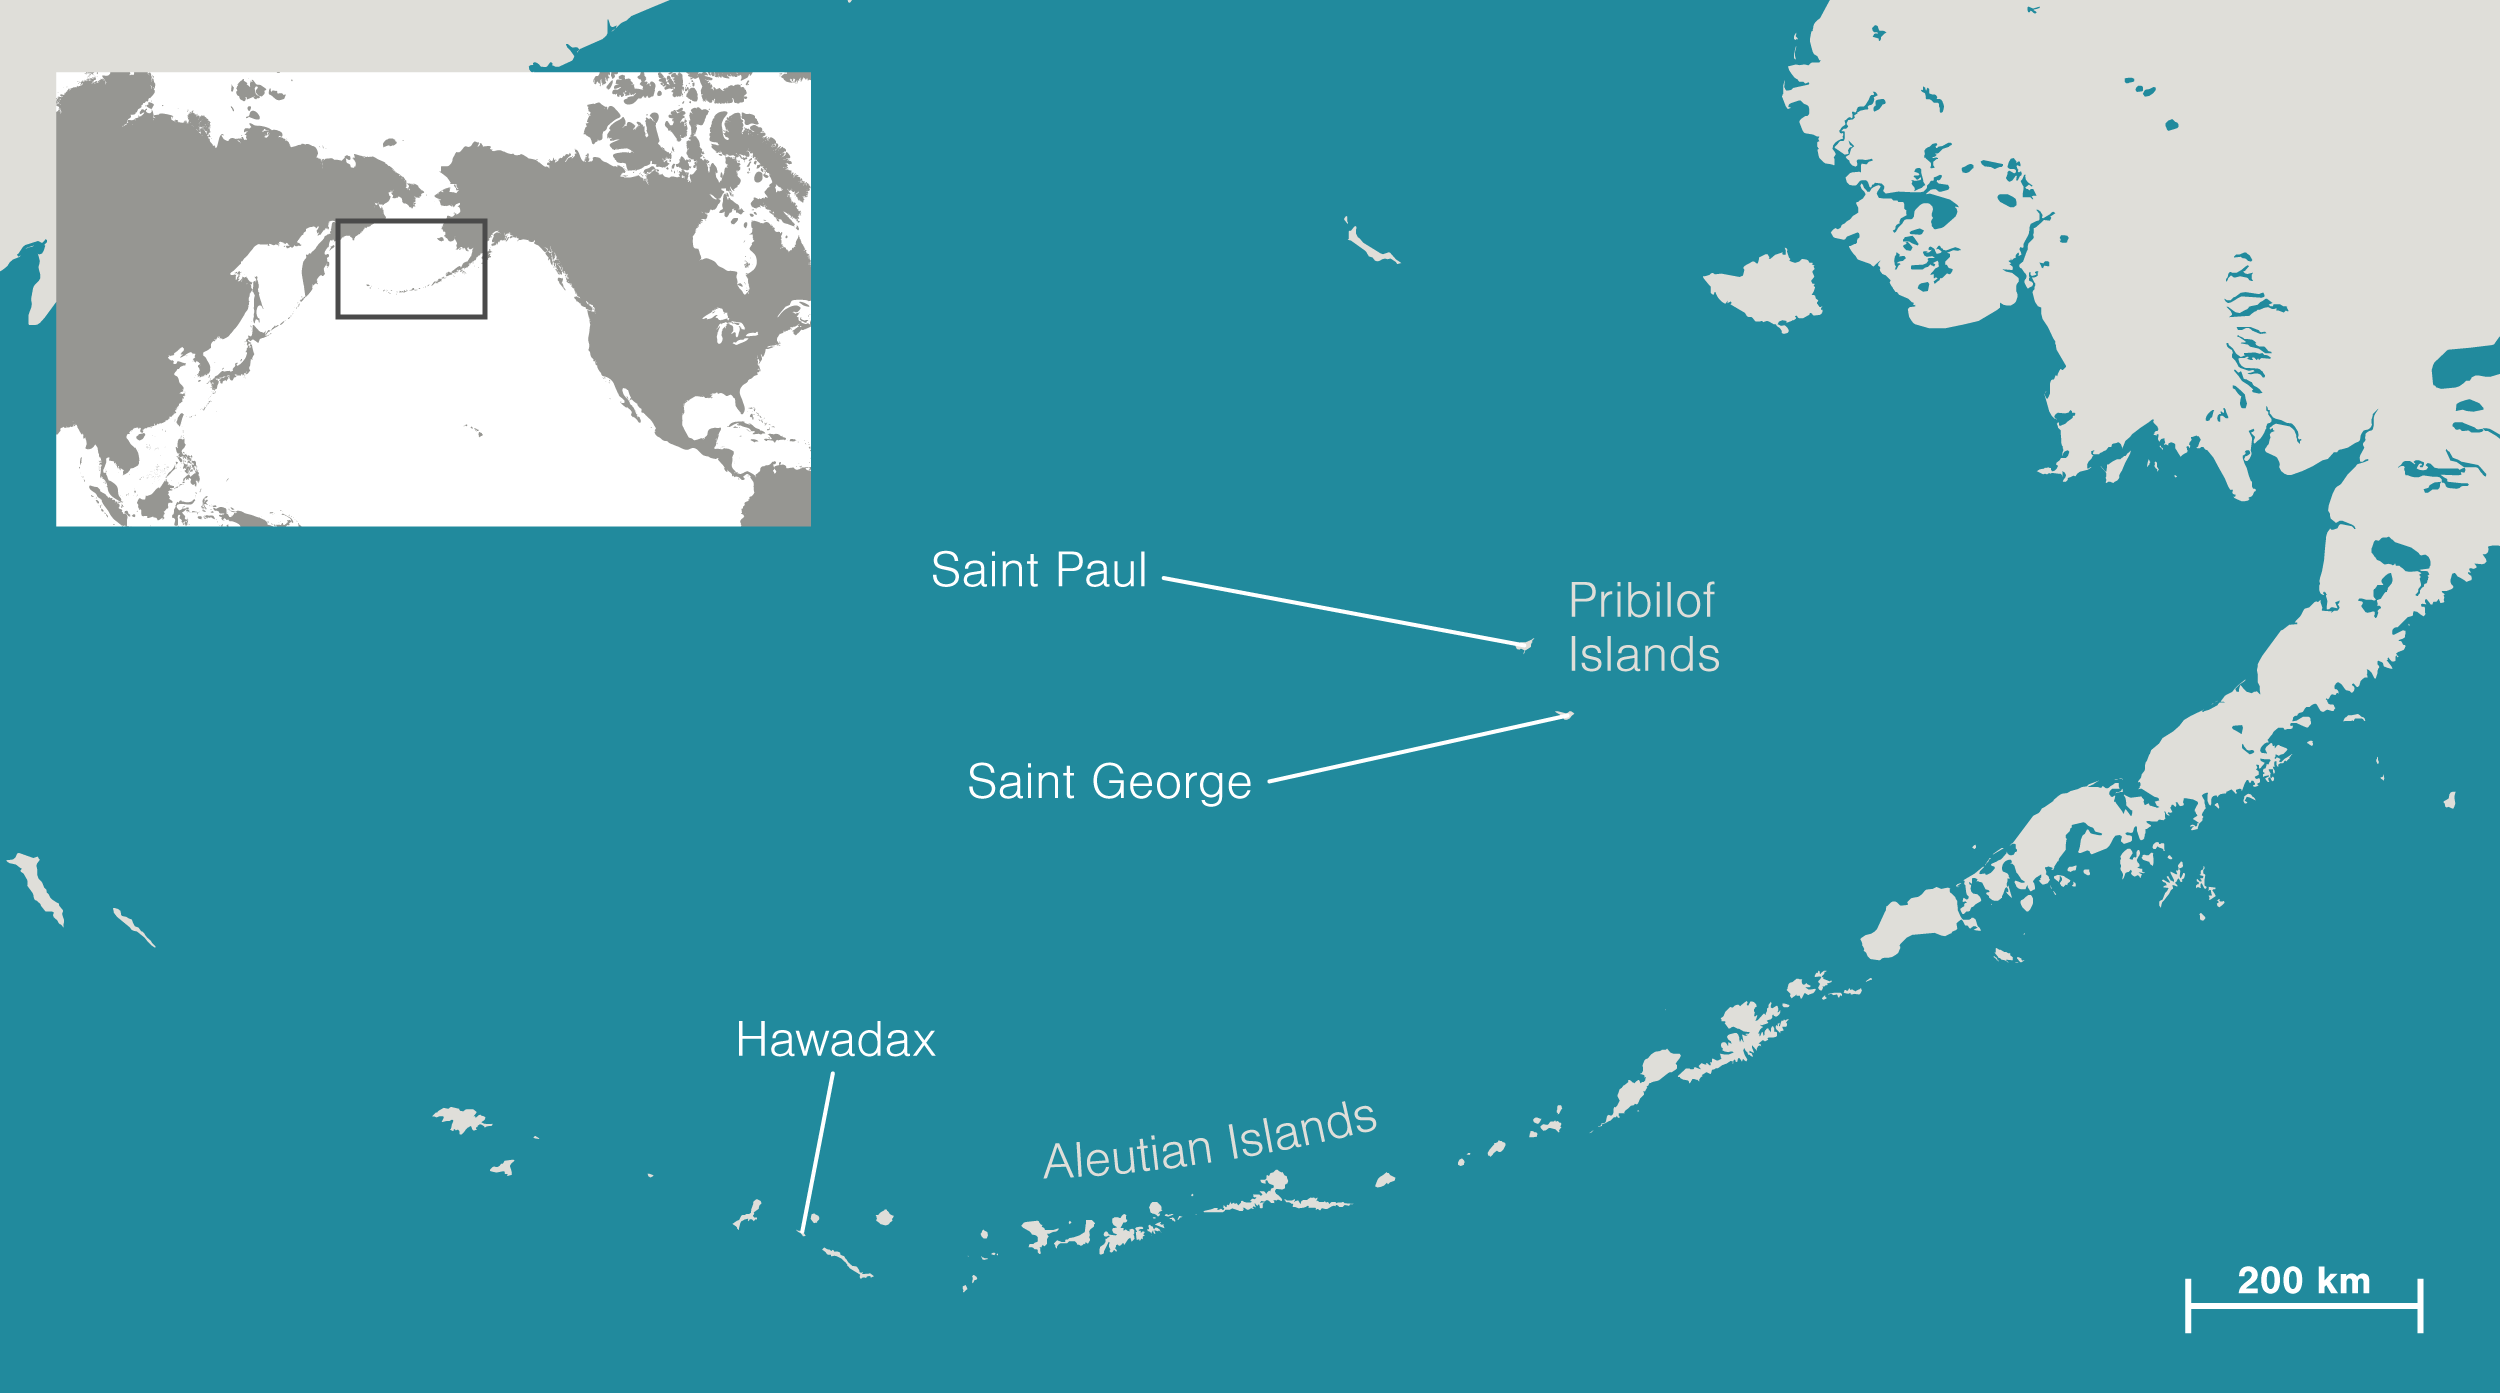 Rat Islands, Alaska, Map, & History